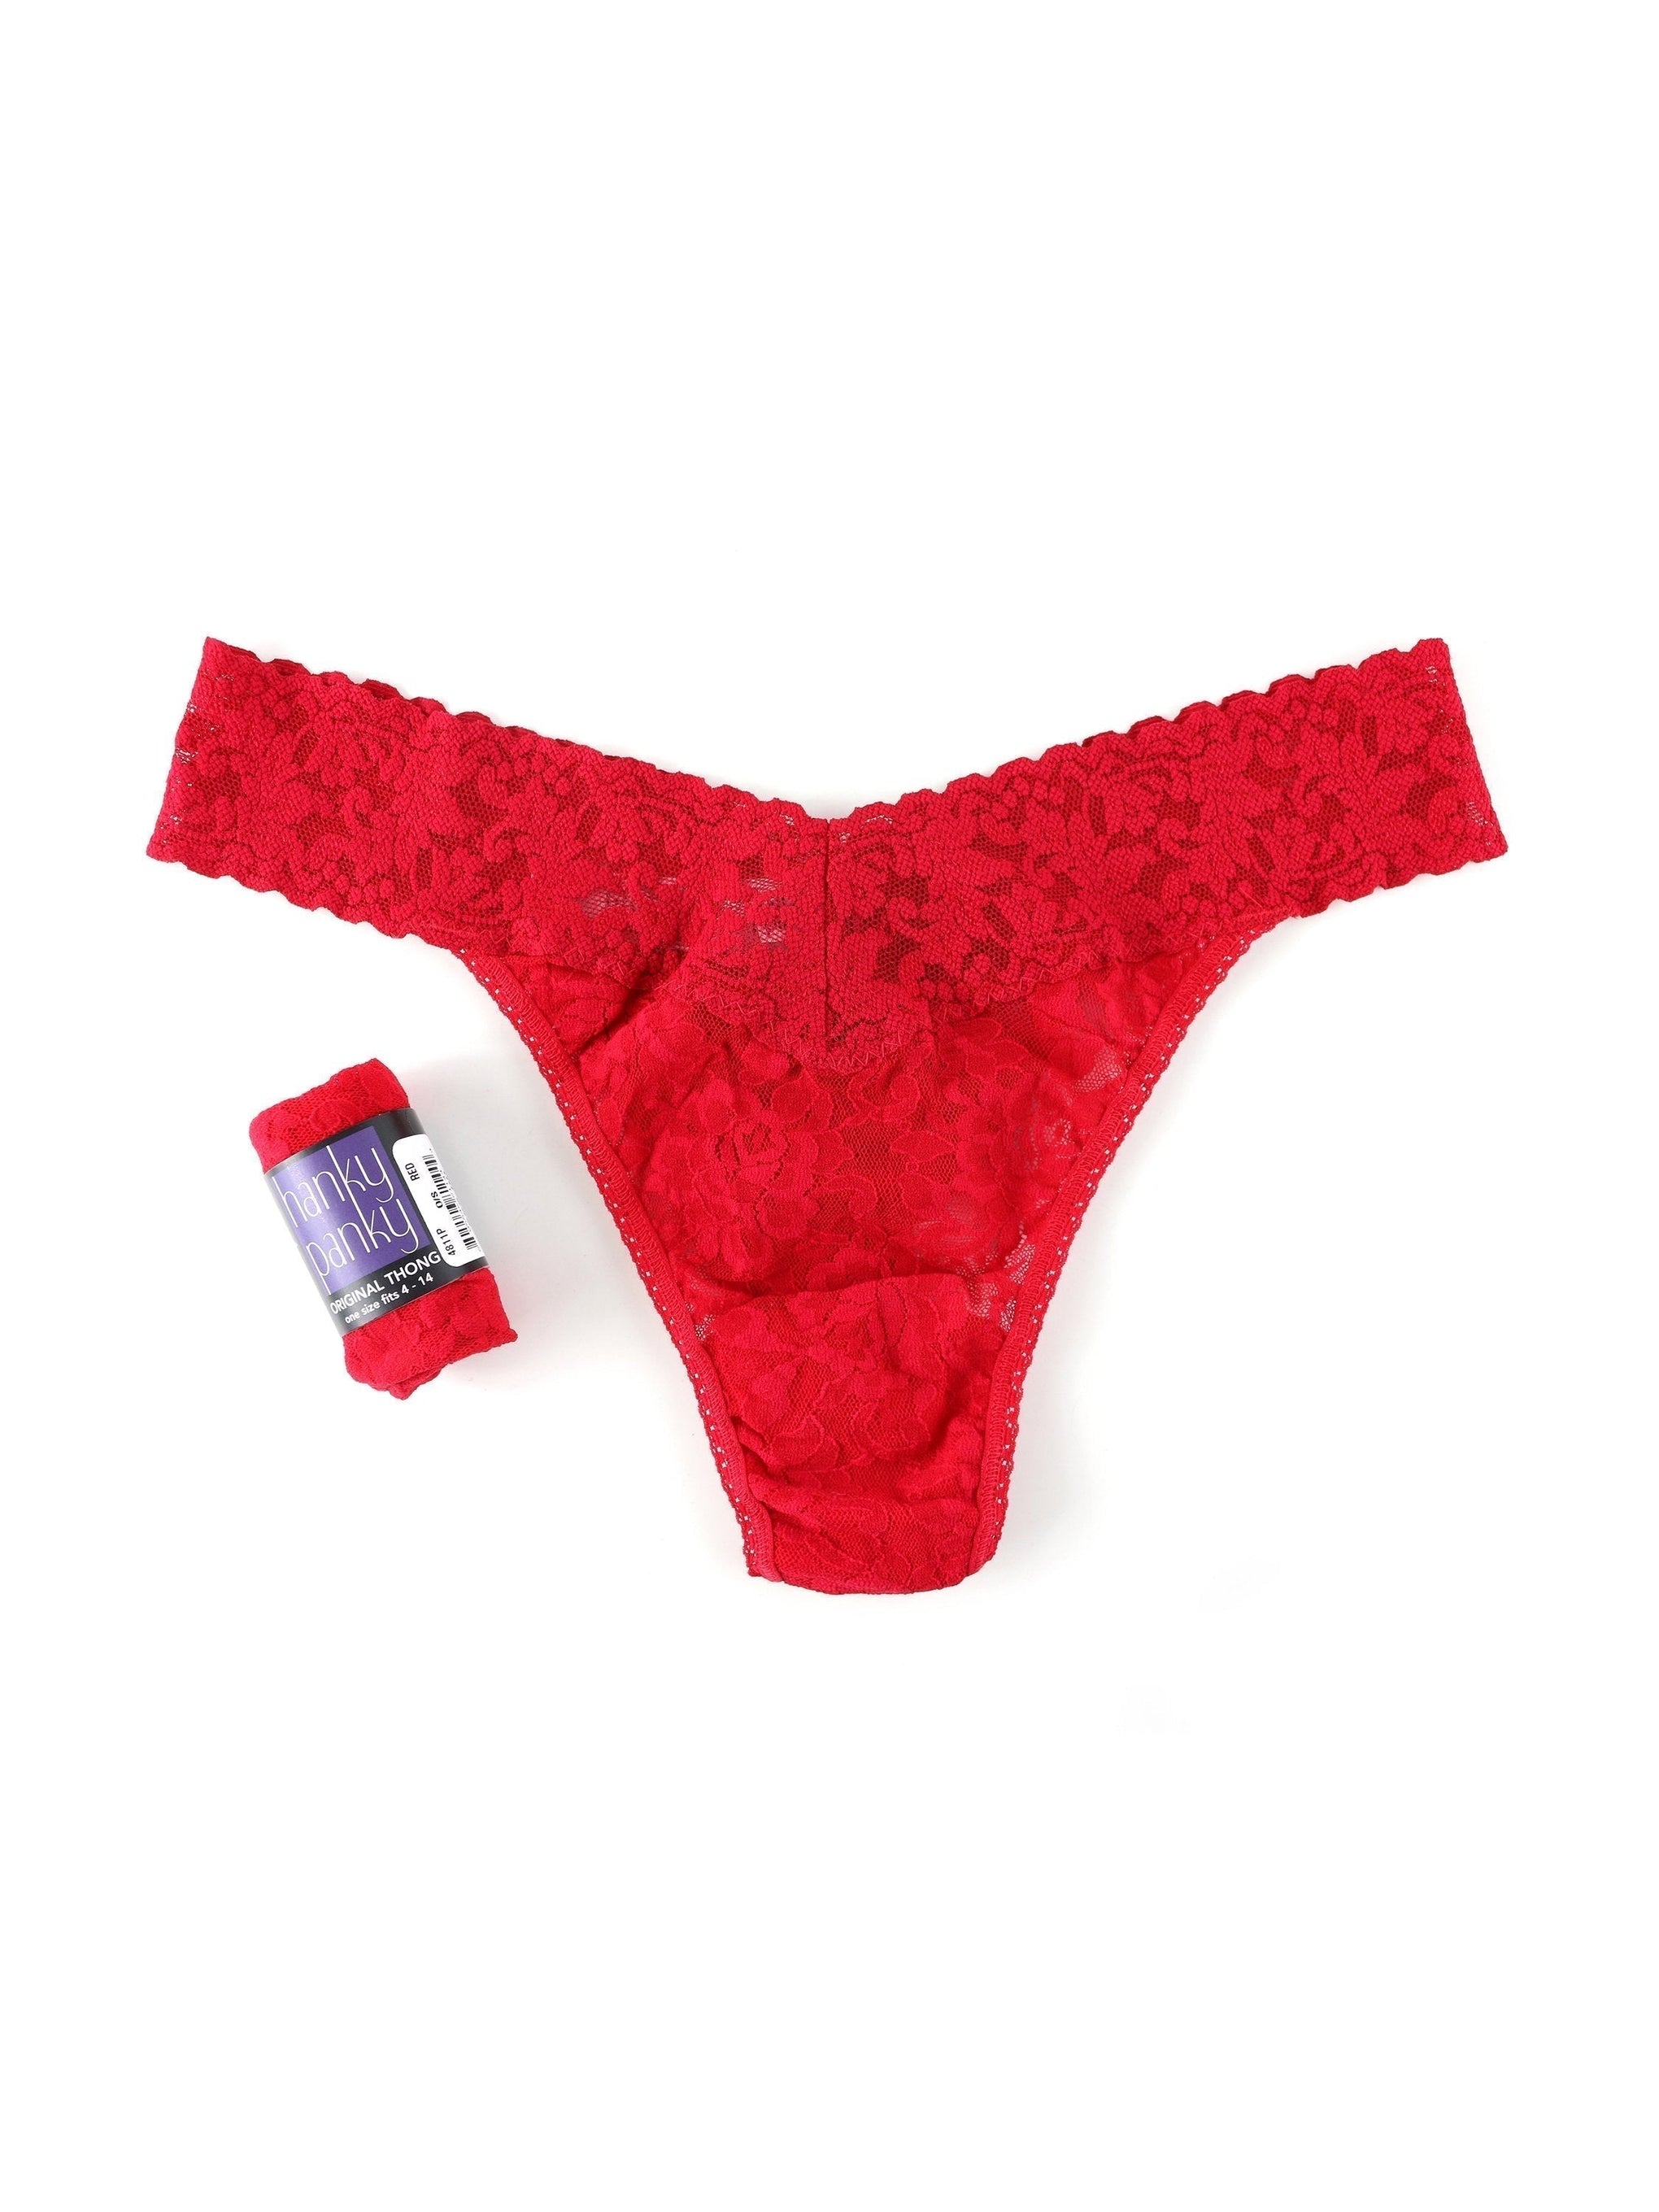 Lace Underwear Australia, Shop 75 items